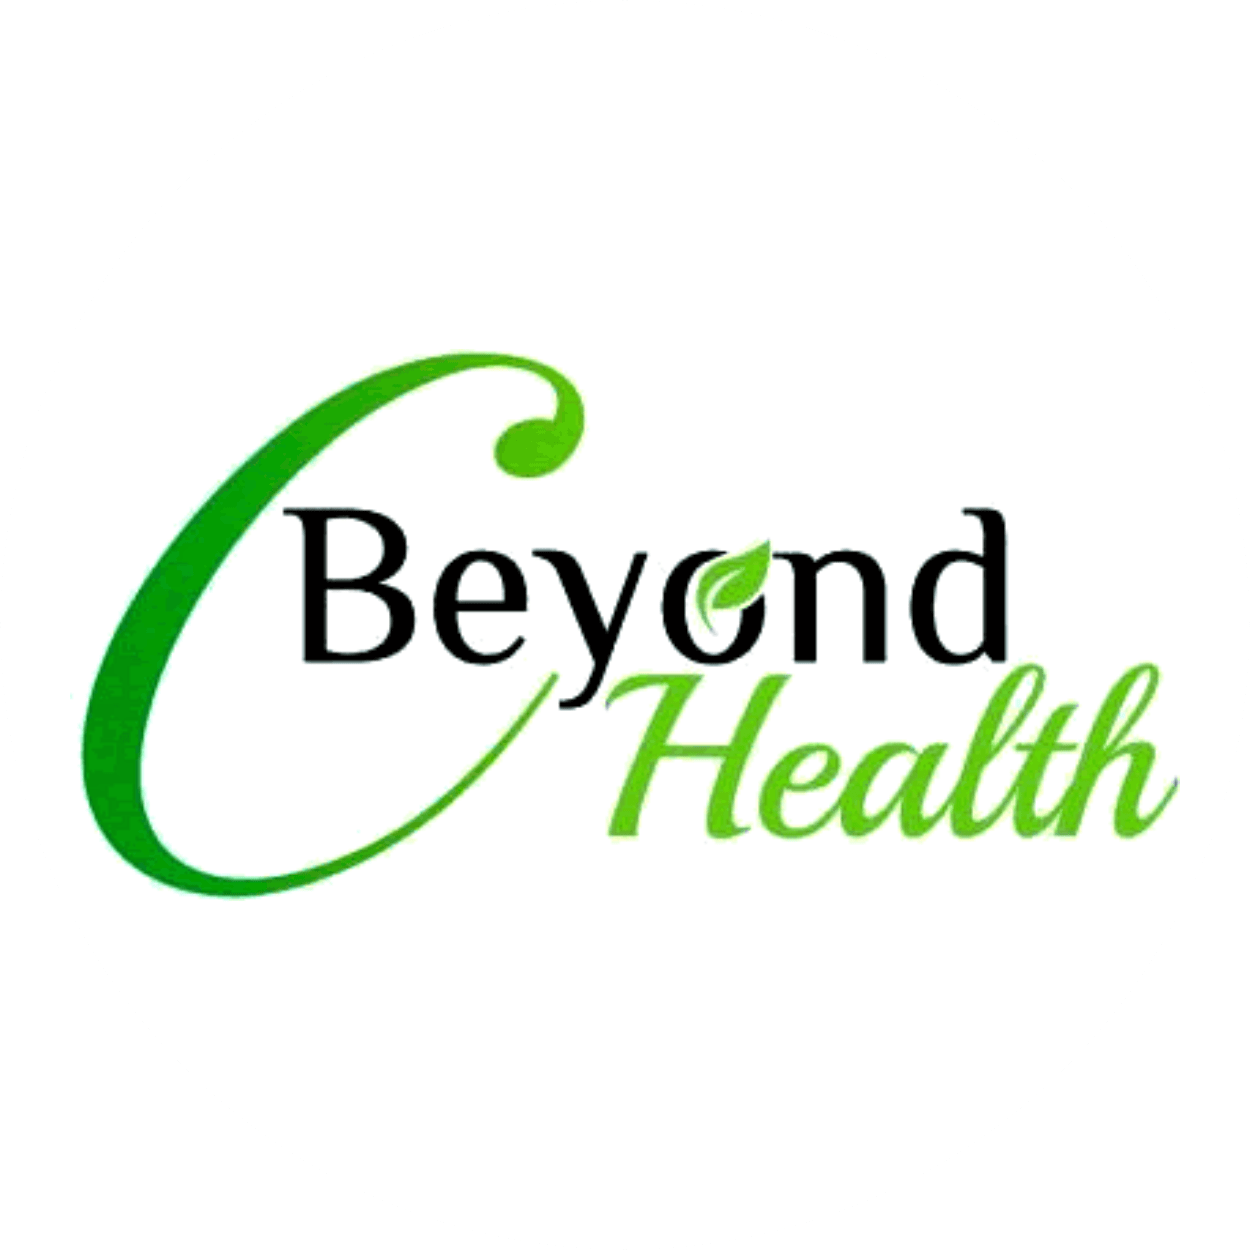 C Beyond Health